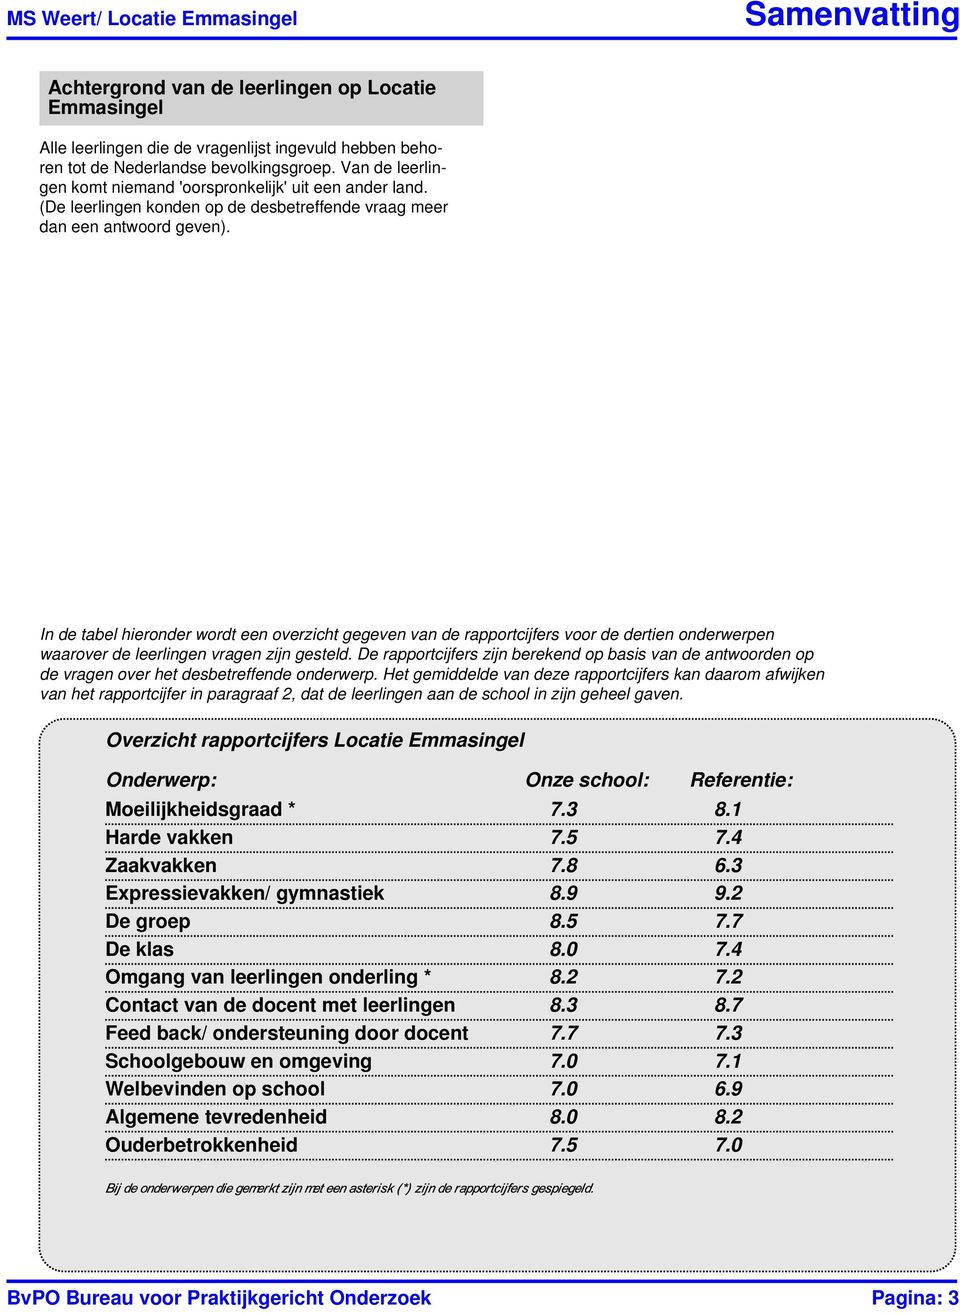 In de tabel hieronder wordt een overzicht gegeven van de rapportcijfers voor de dertien onderwerpen waarover de leerlingen vragen zijn gesteld.